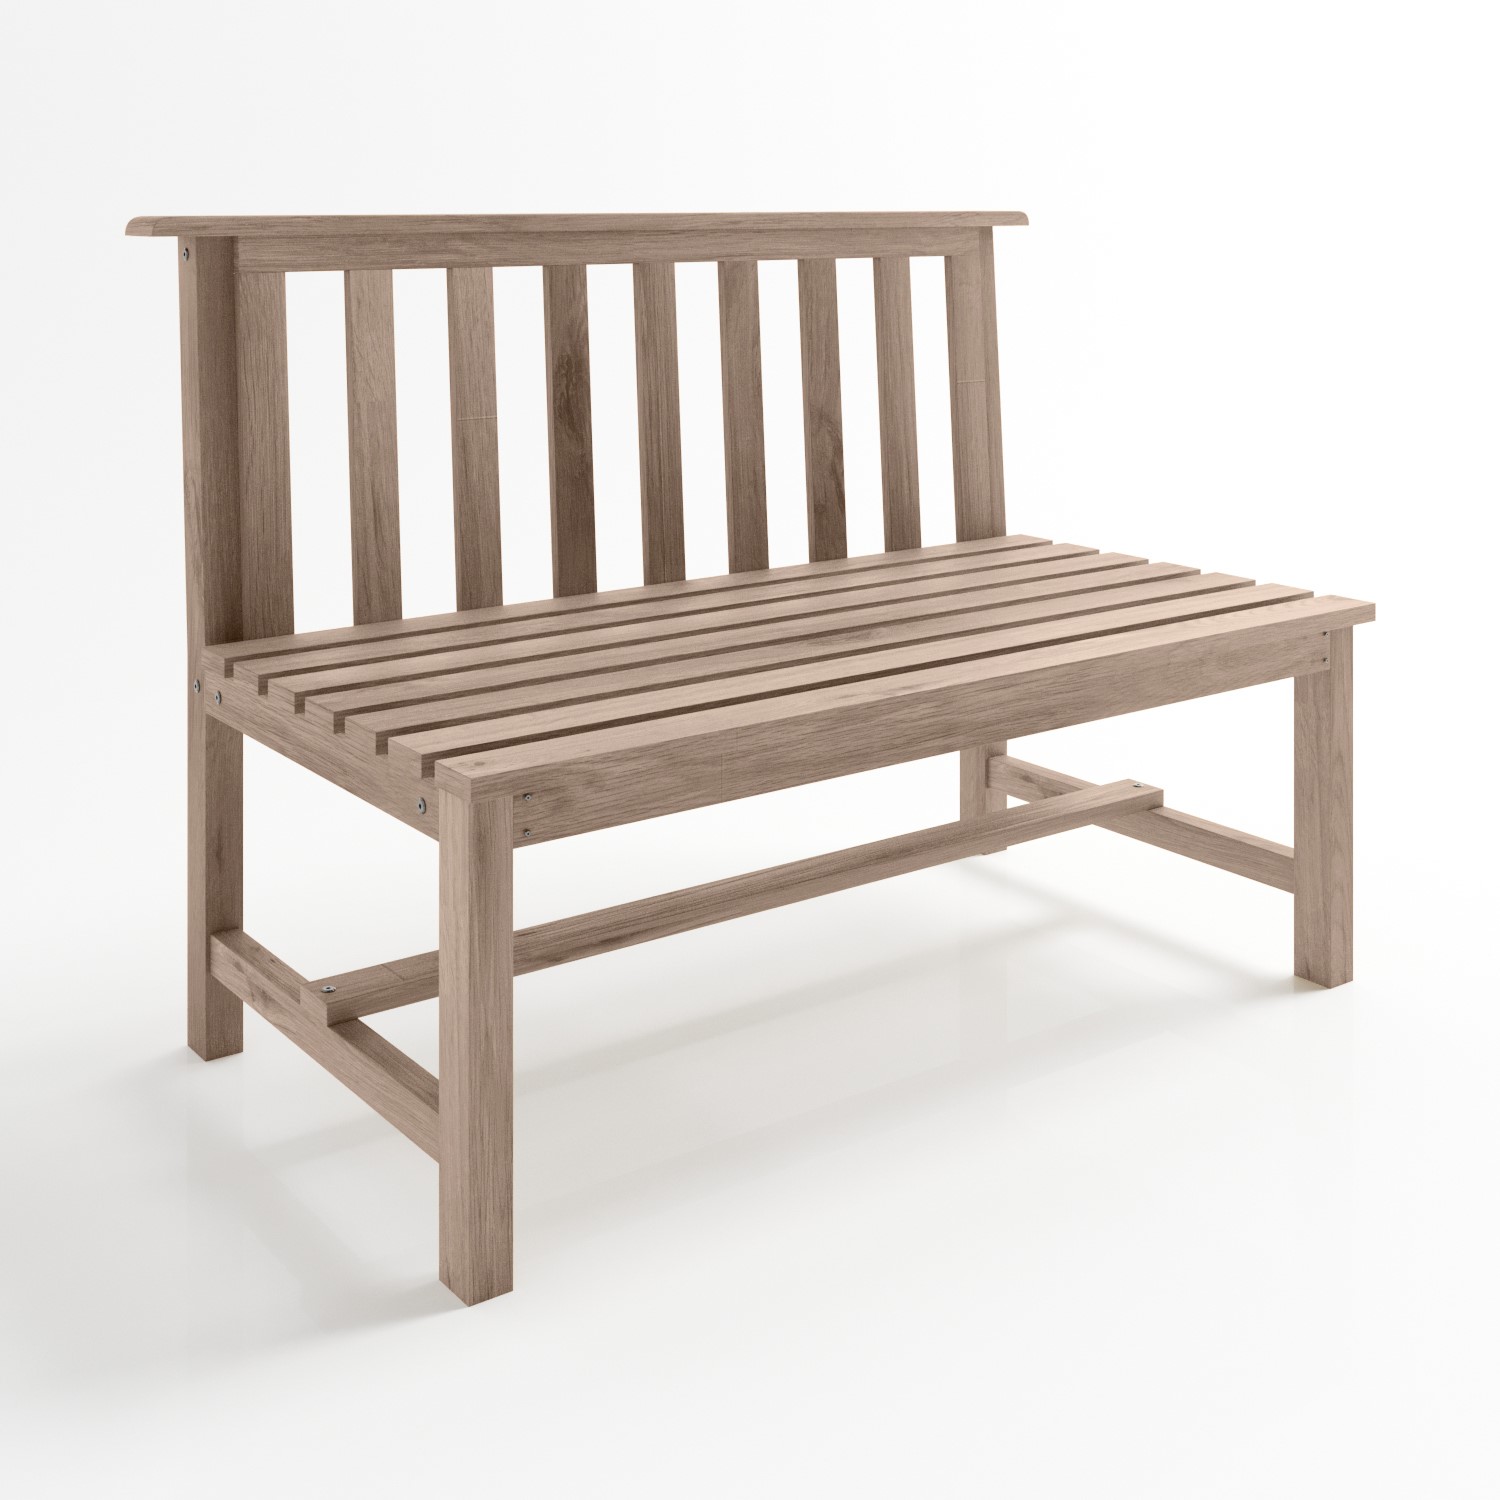 Read more about 2 seater wooden garden bench 110 x 85 cm como